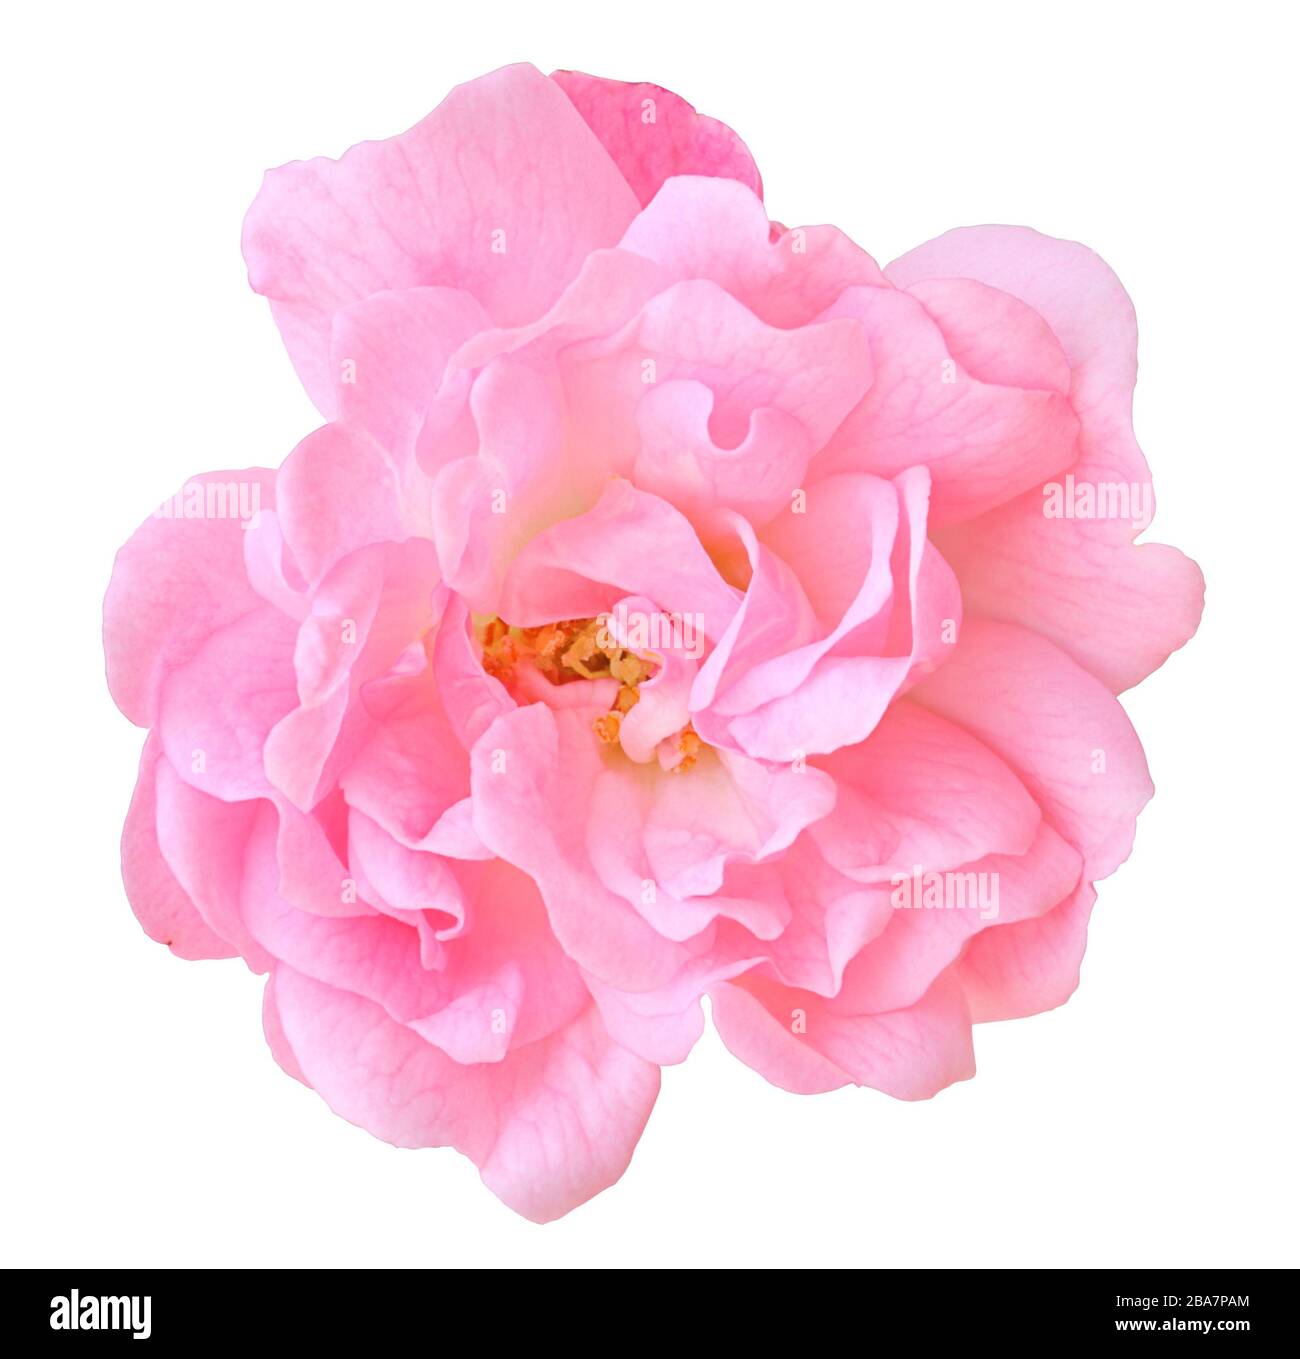 Primer plano de una maravillosa rosa rosa rosa (Rosaceae) aislada sobre fondo blanco, incluyendo trazado de recorte. Alemania. rosa Rosa Rosaceae) isoliert a Foto de stock